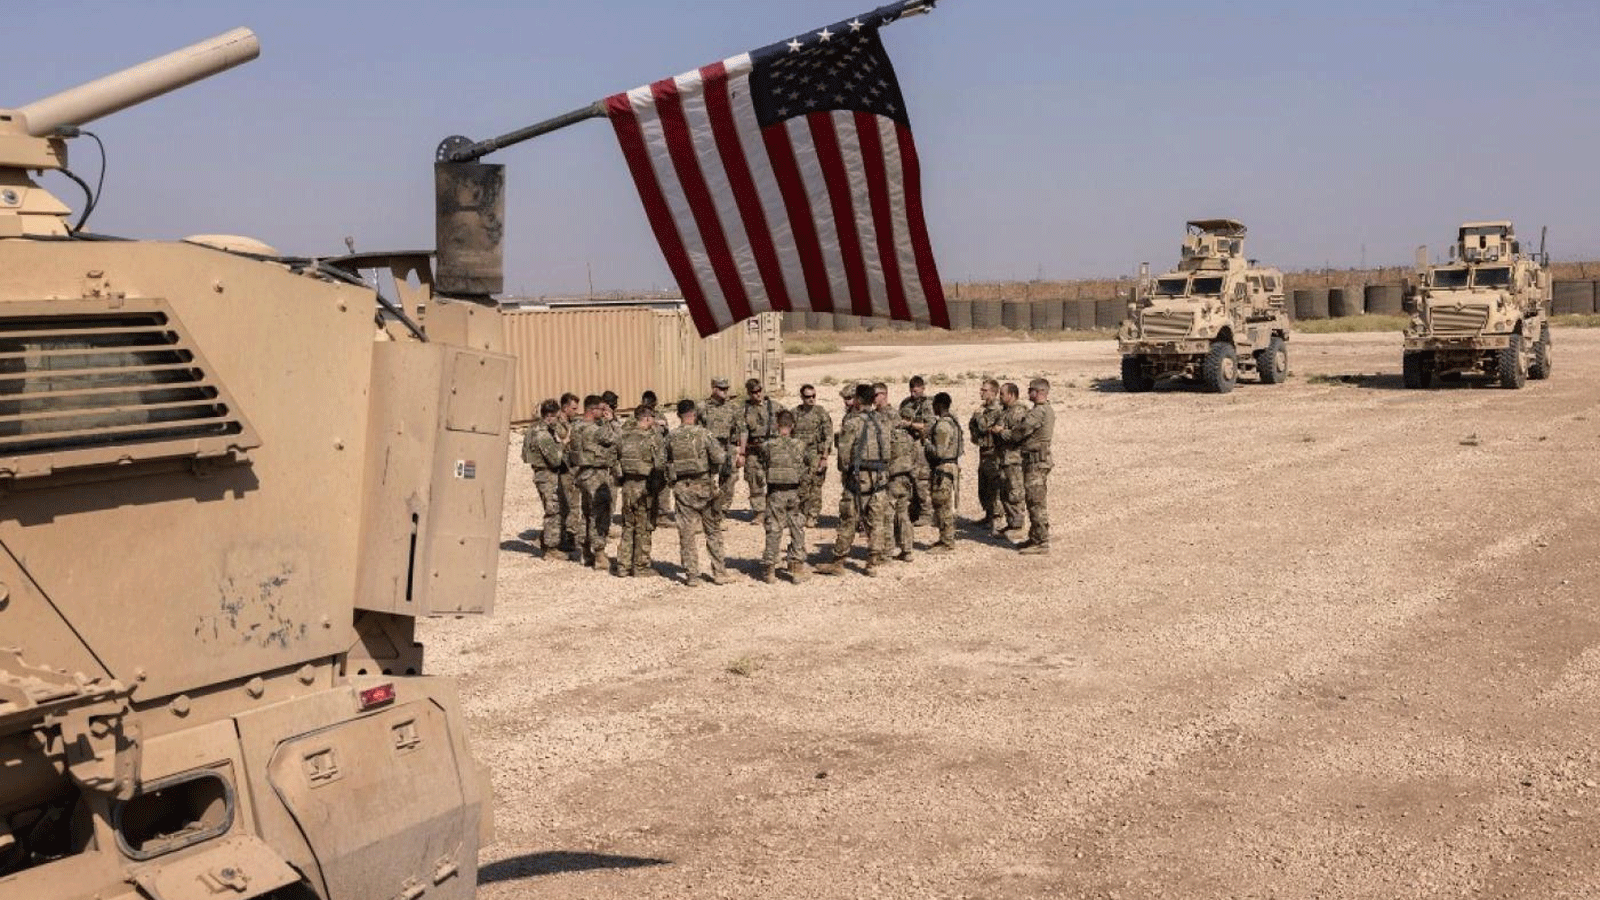 جنود من الجيش الأميريكي يستعدون للخروج في دورية من موقع قتالي بعيد في شمال شرق سوريا(أرشيفية)